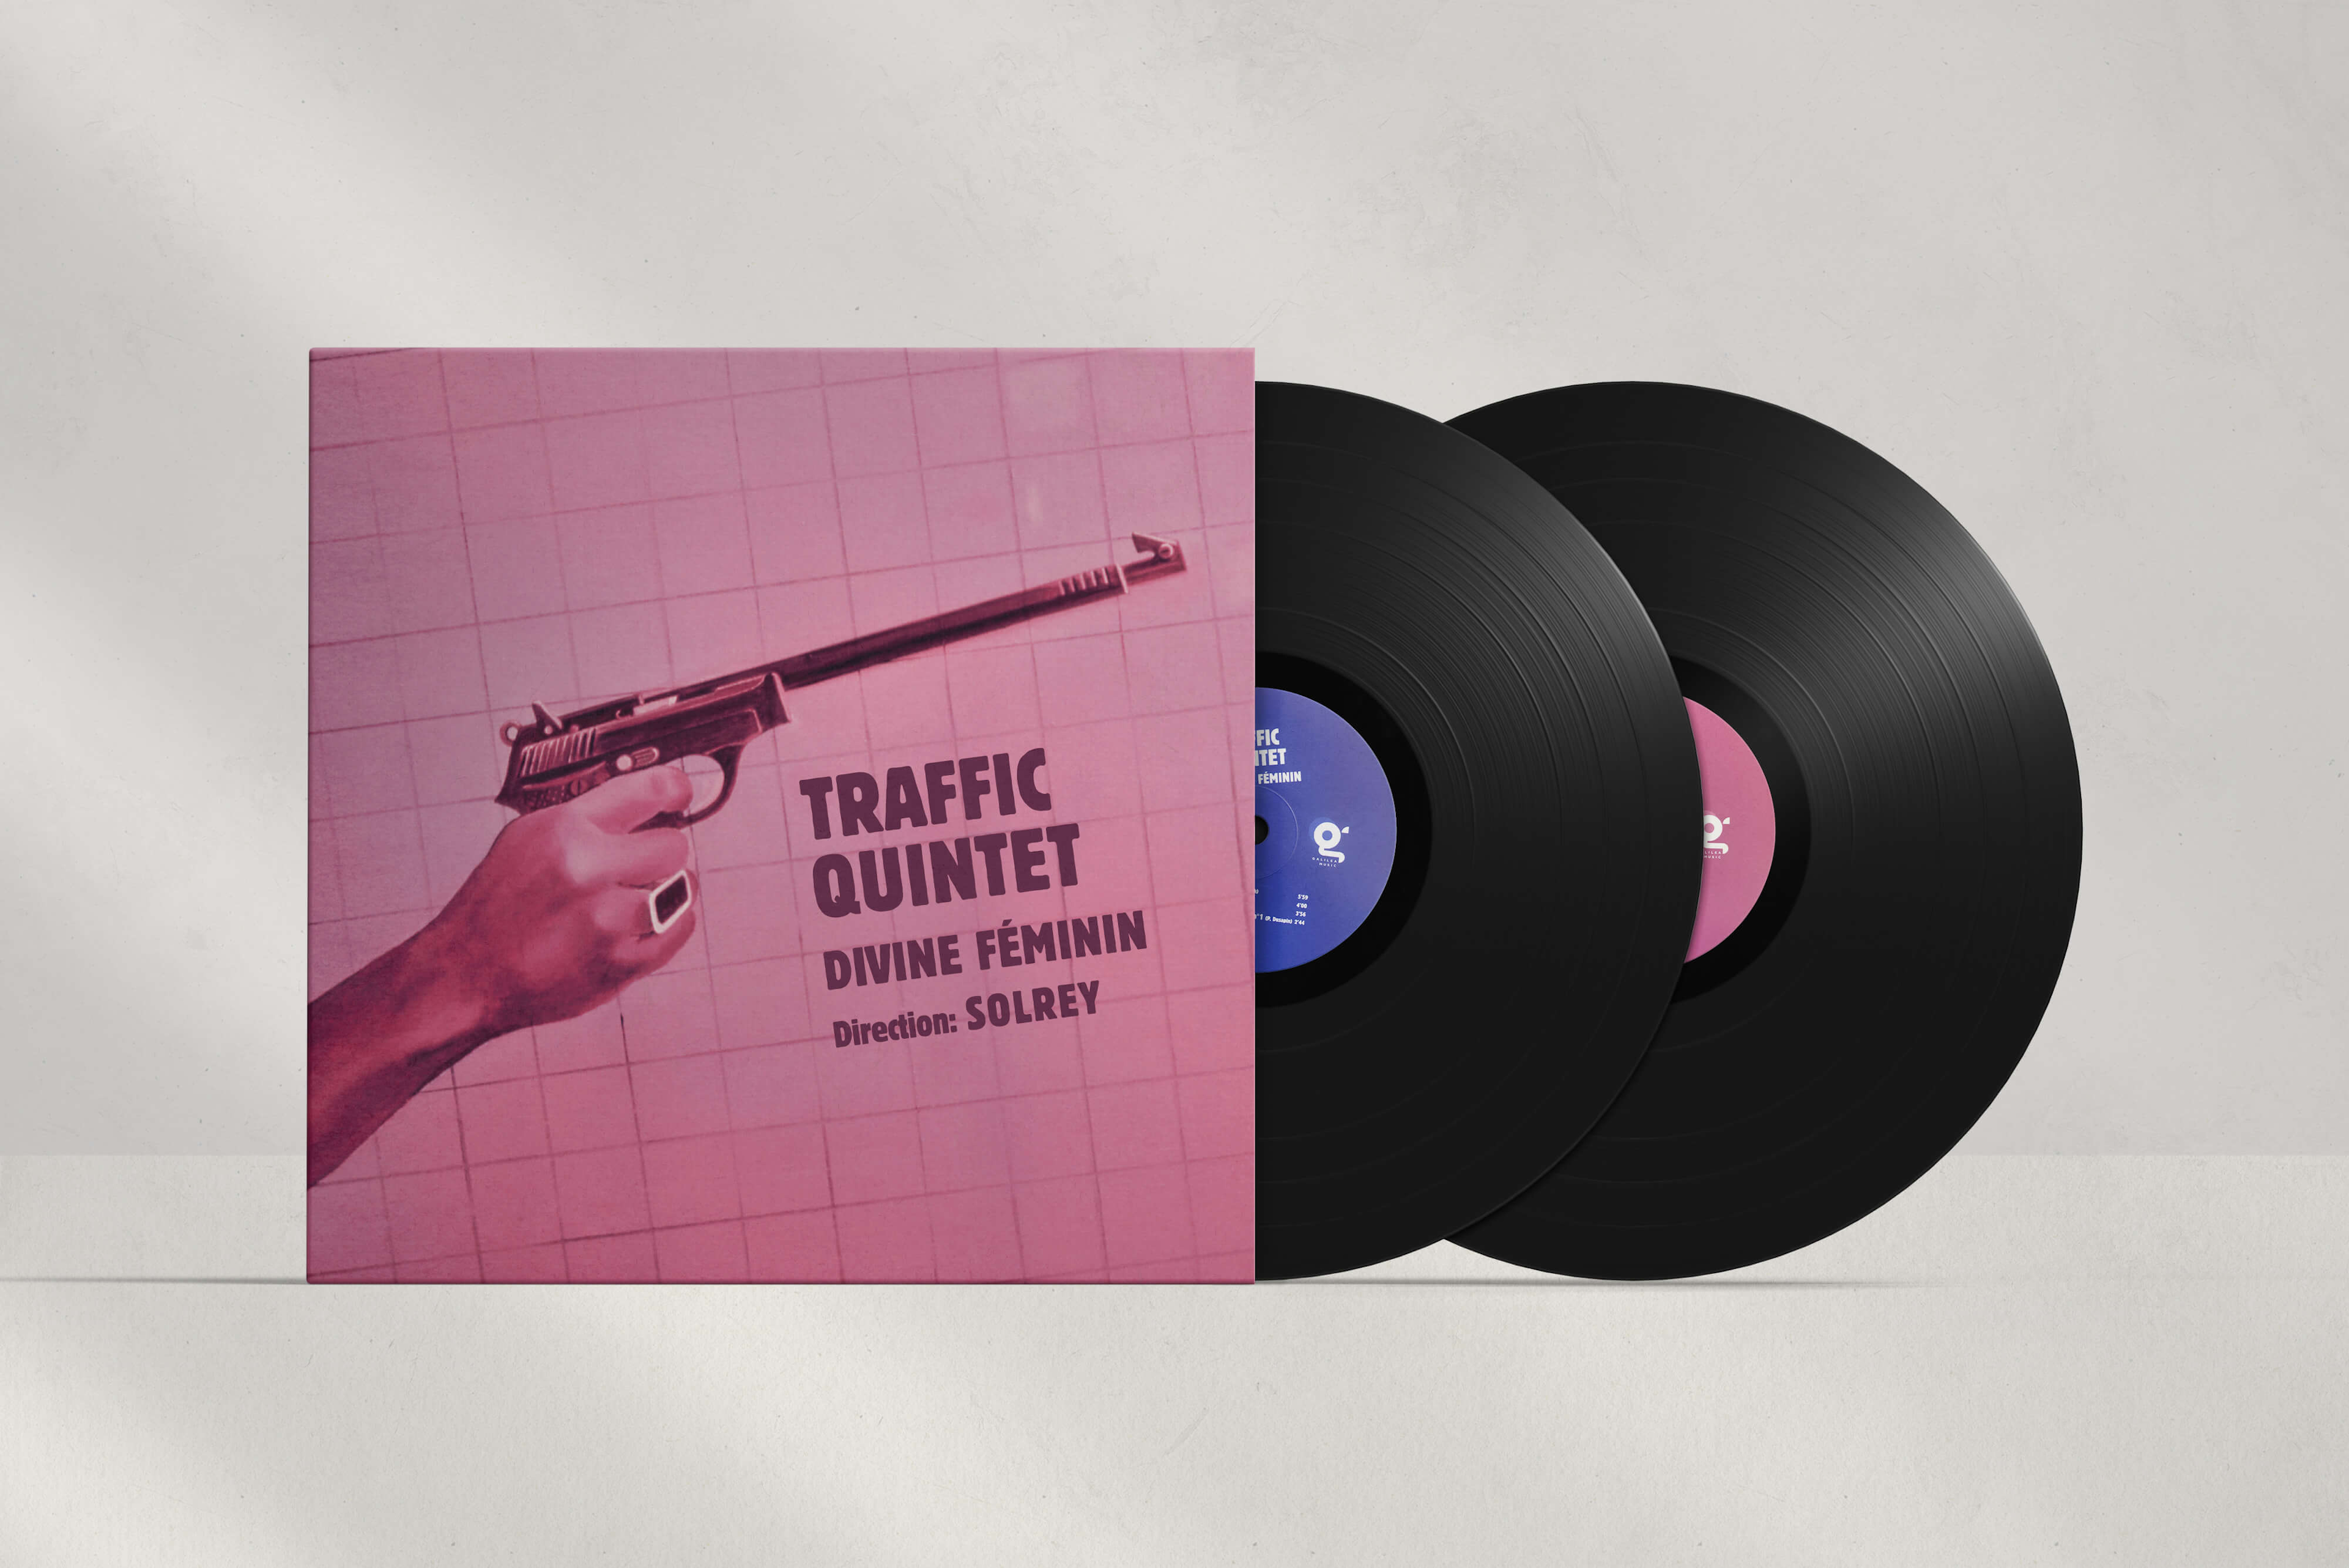 Réédition des vinyles « Divine Féminin » & « Nouvelles Vagues » de Solrey avec le Traffic Quintet